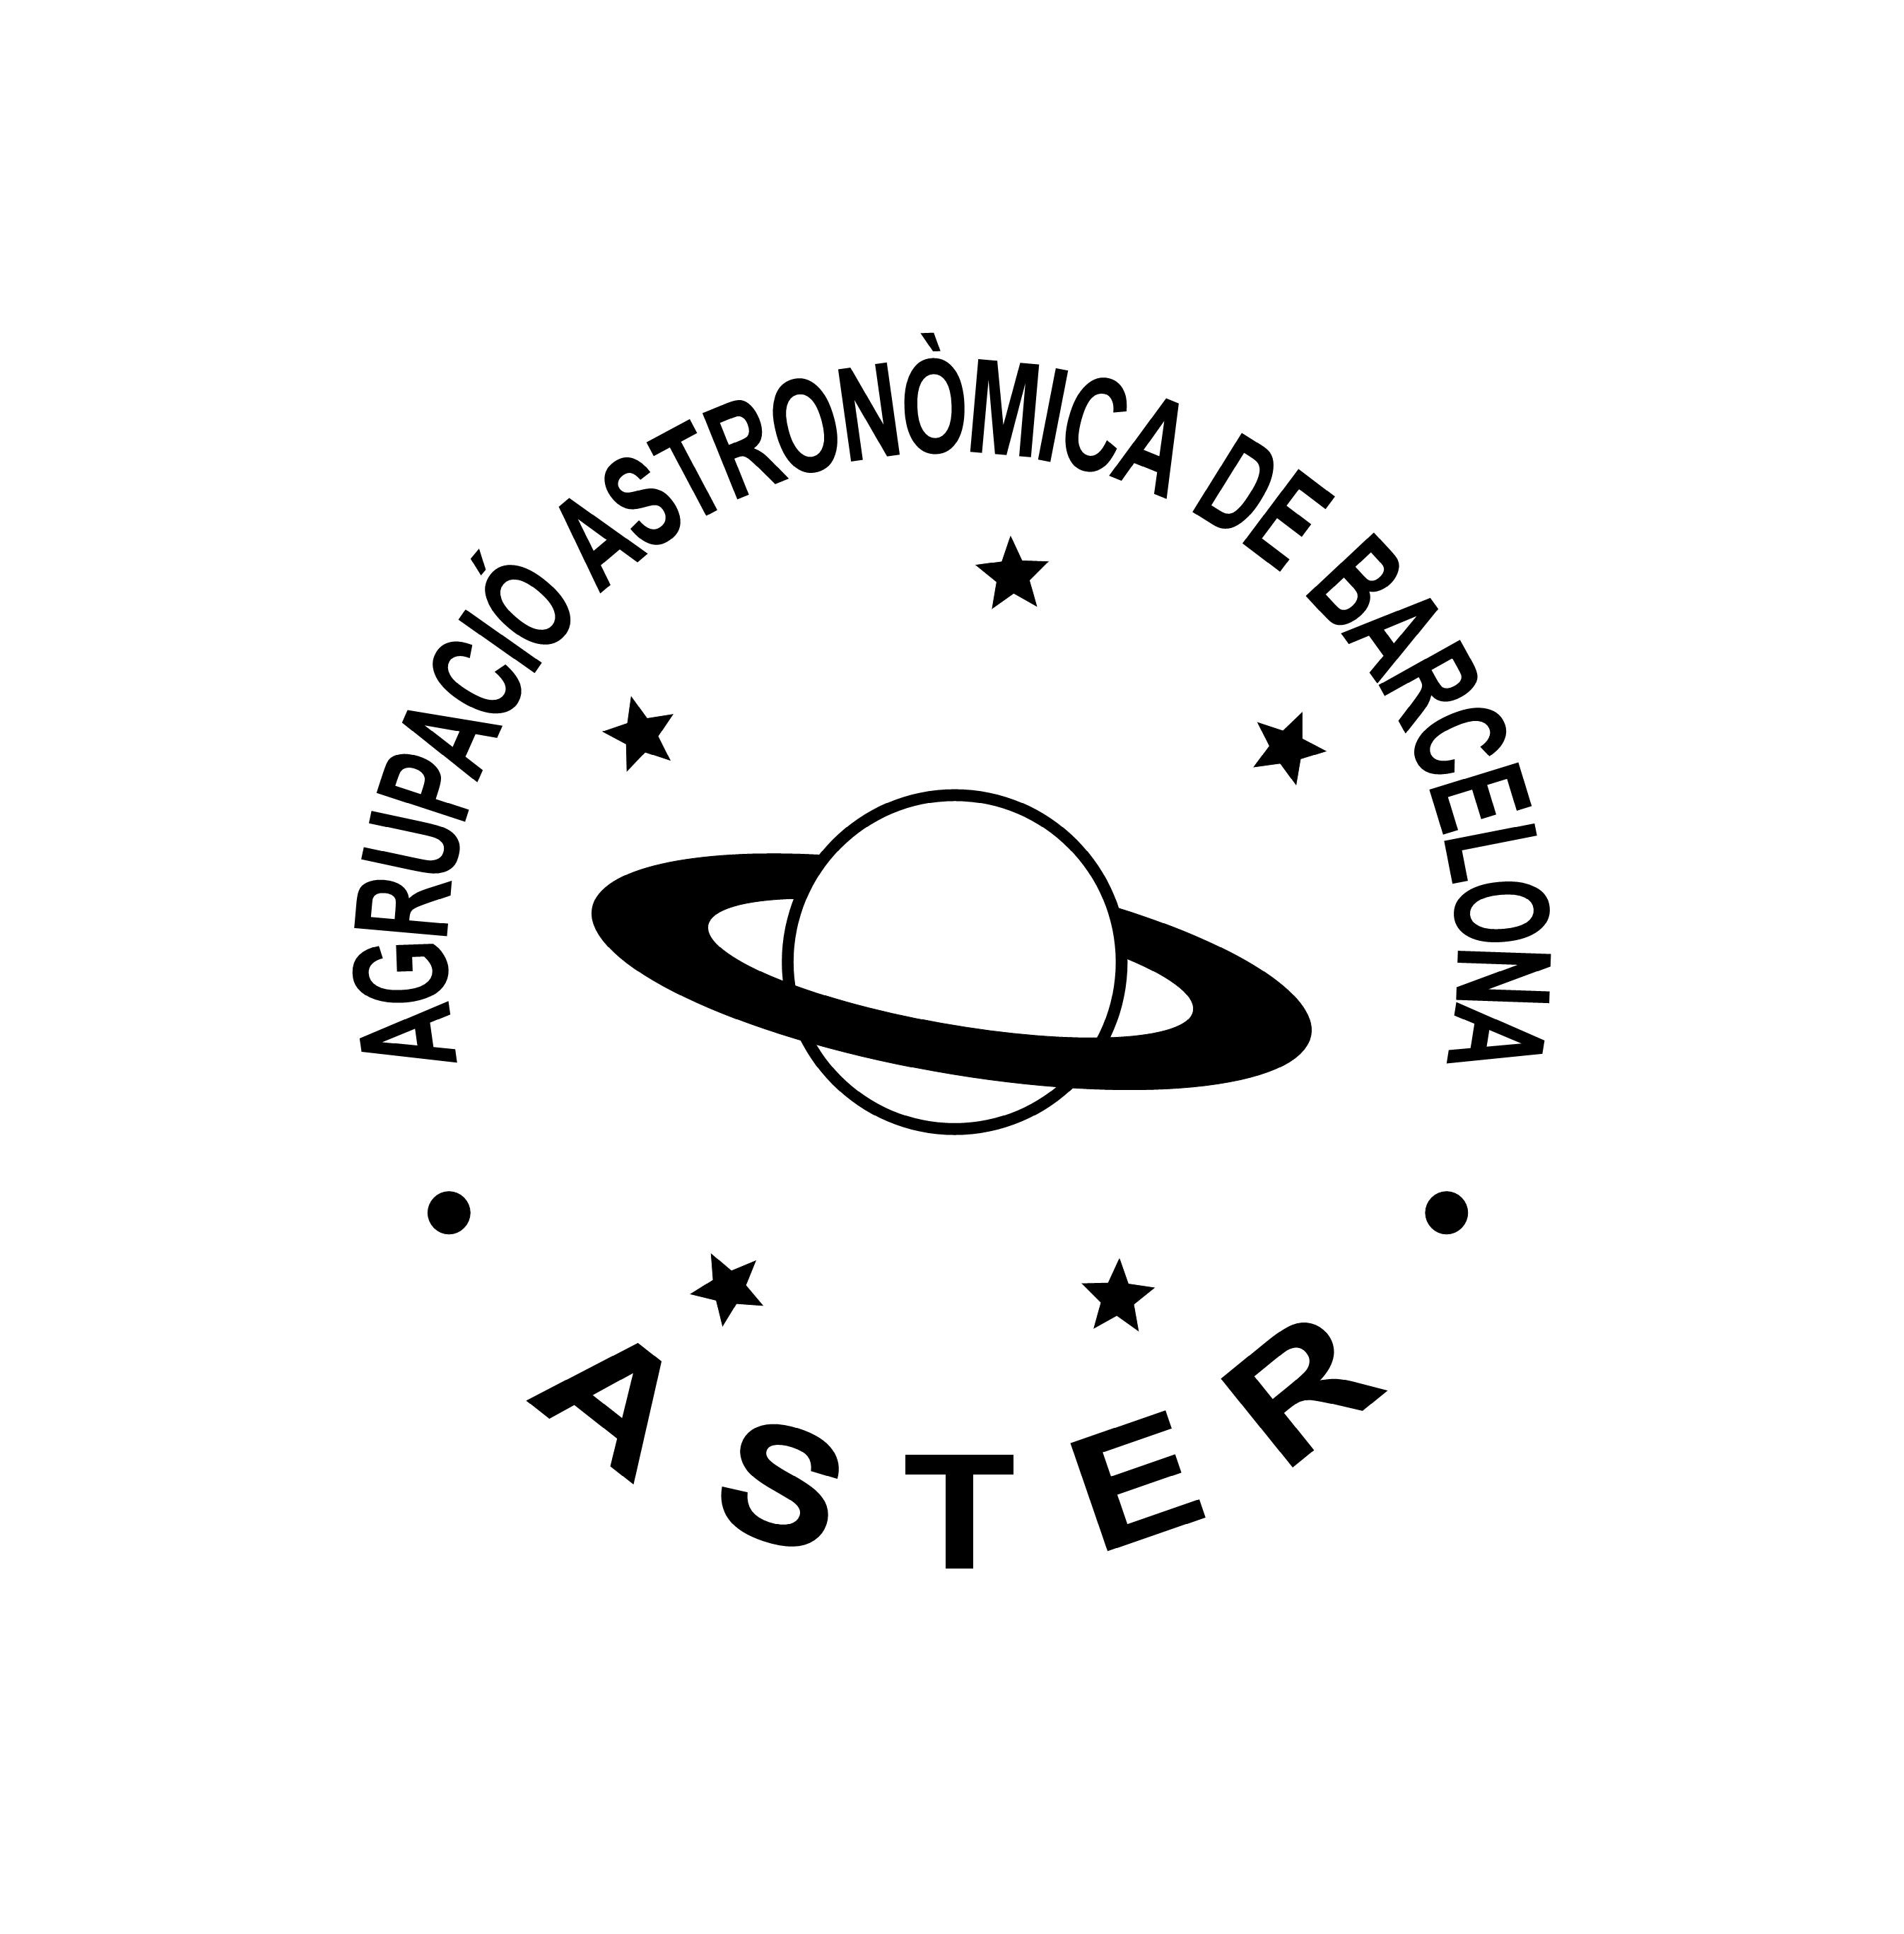 Aster, Agrupació Astronòmica de Barcelona